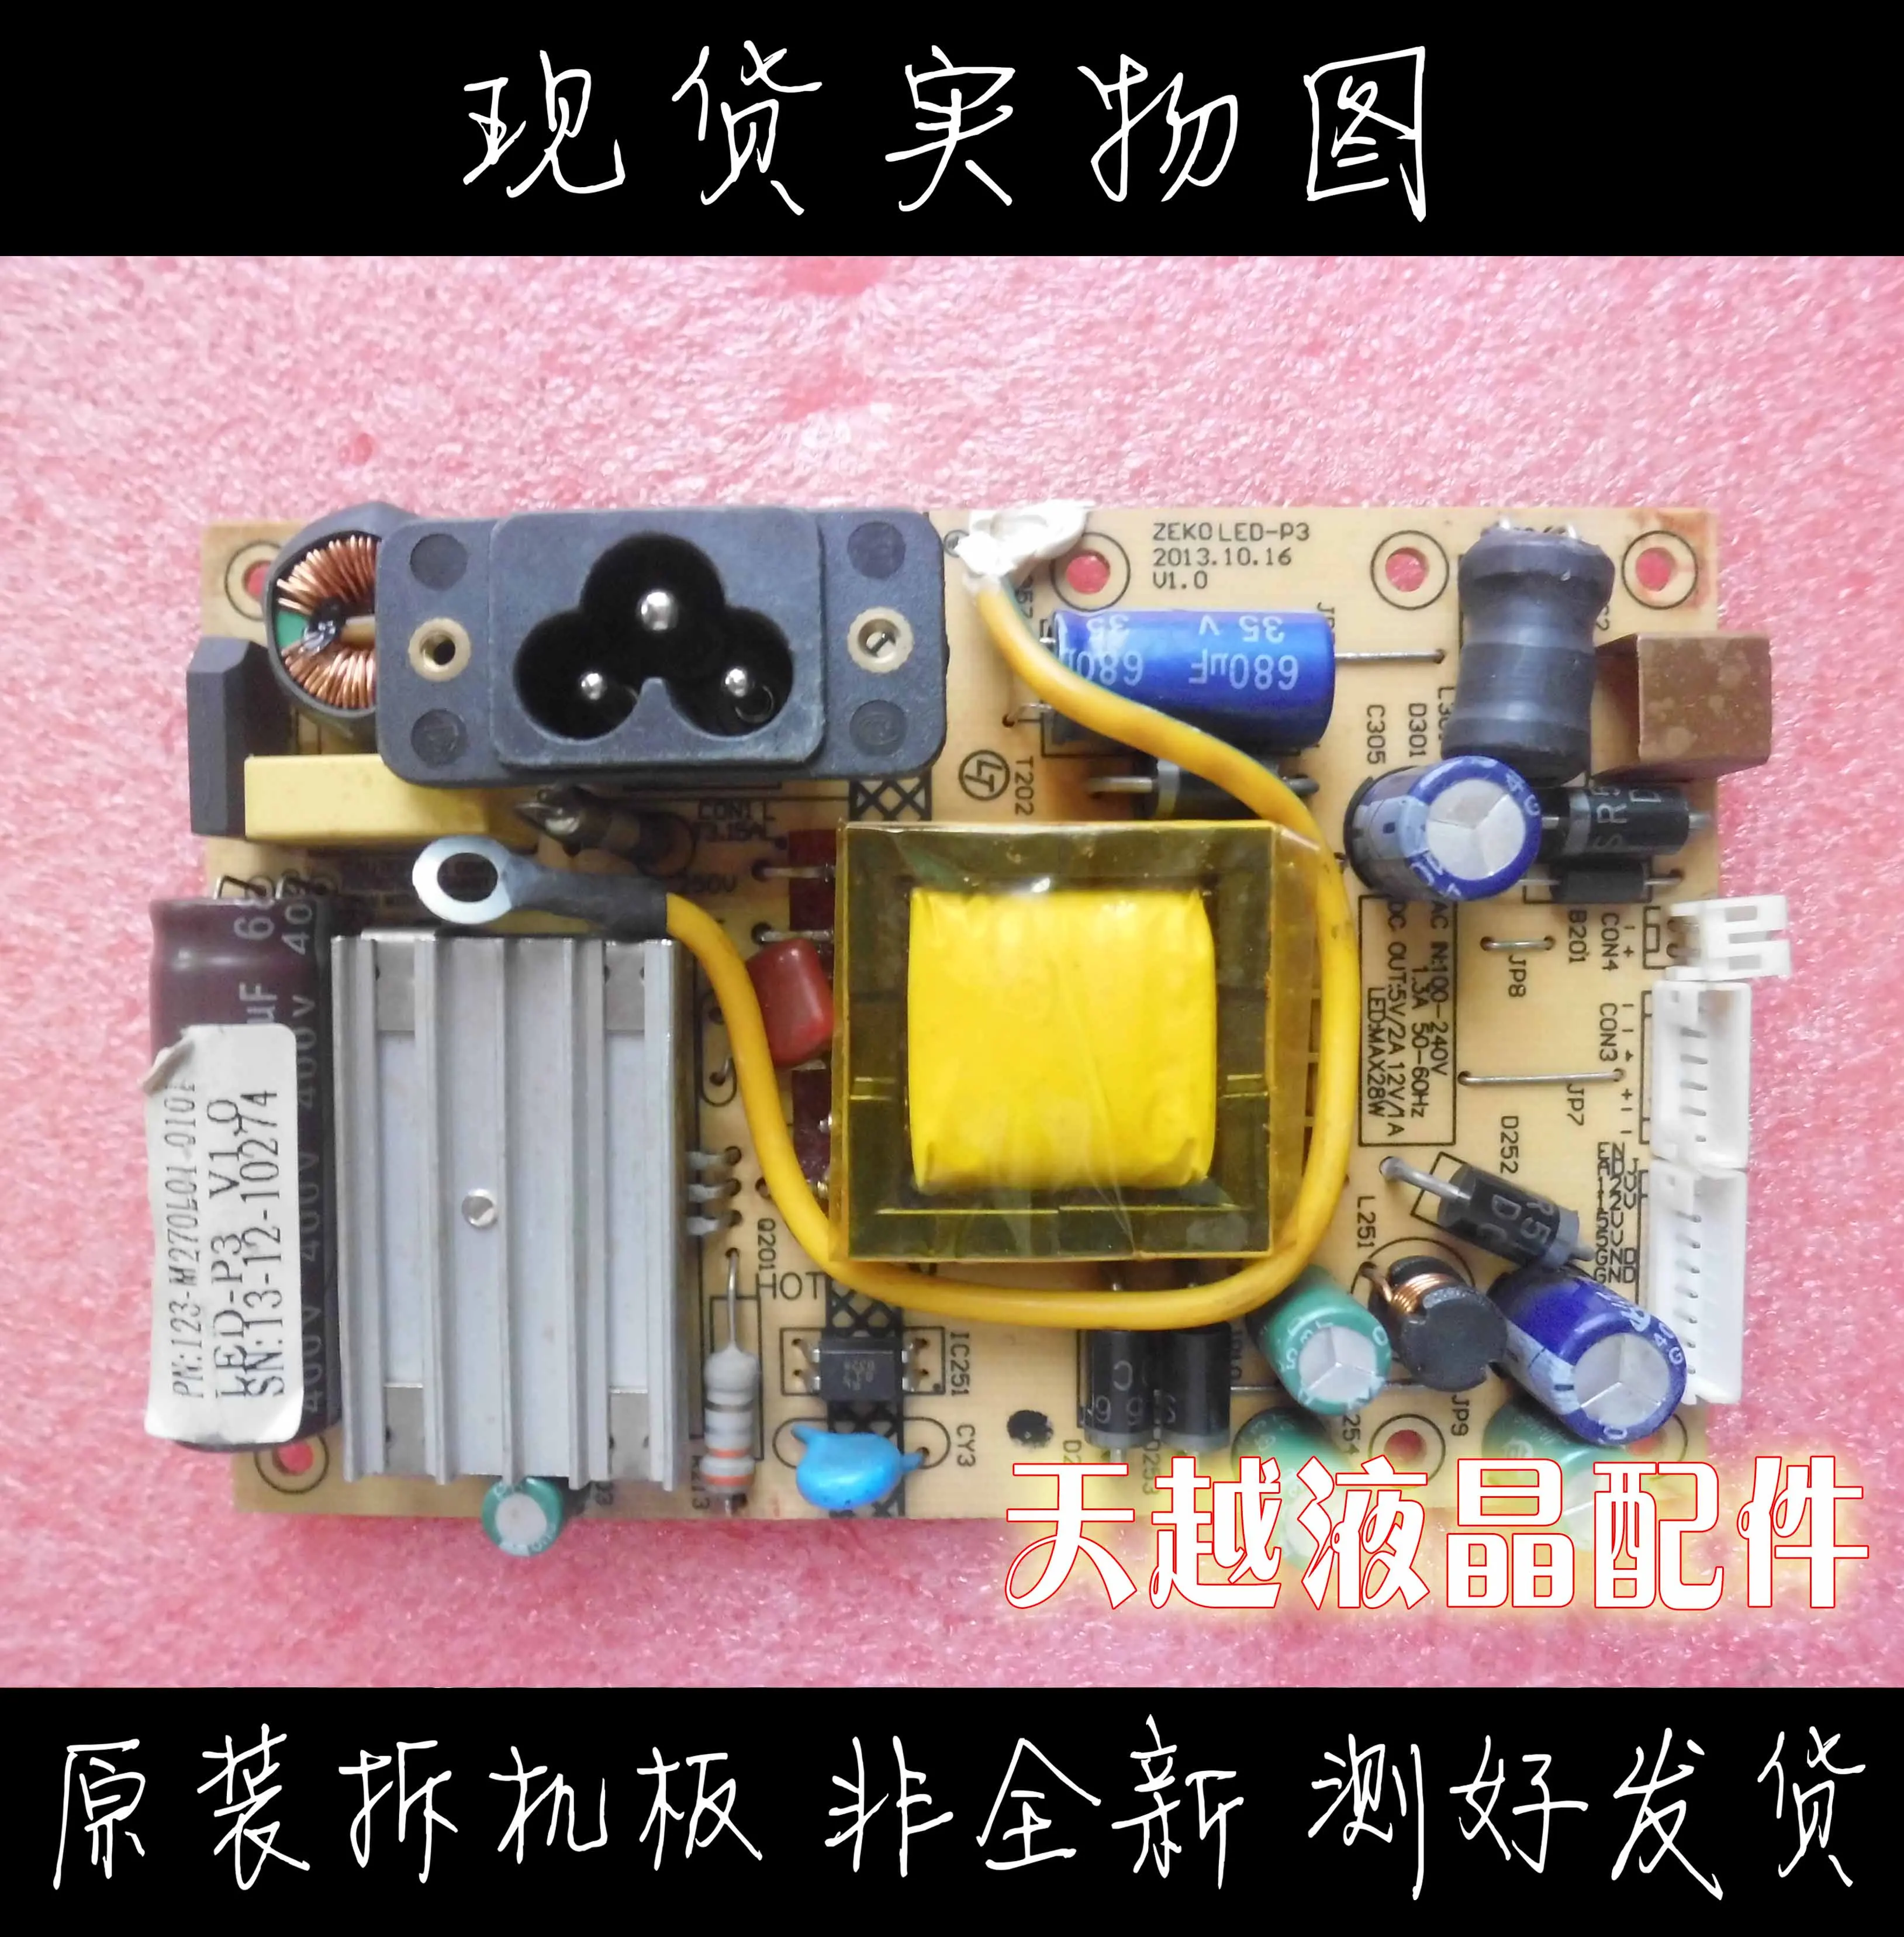 

S3209 MA2230M LZ2832B power board ZEK0LED-P3 high pressure plate ZEKOLED-P3